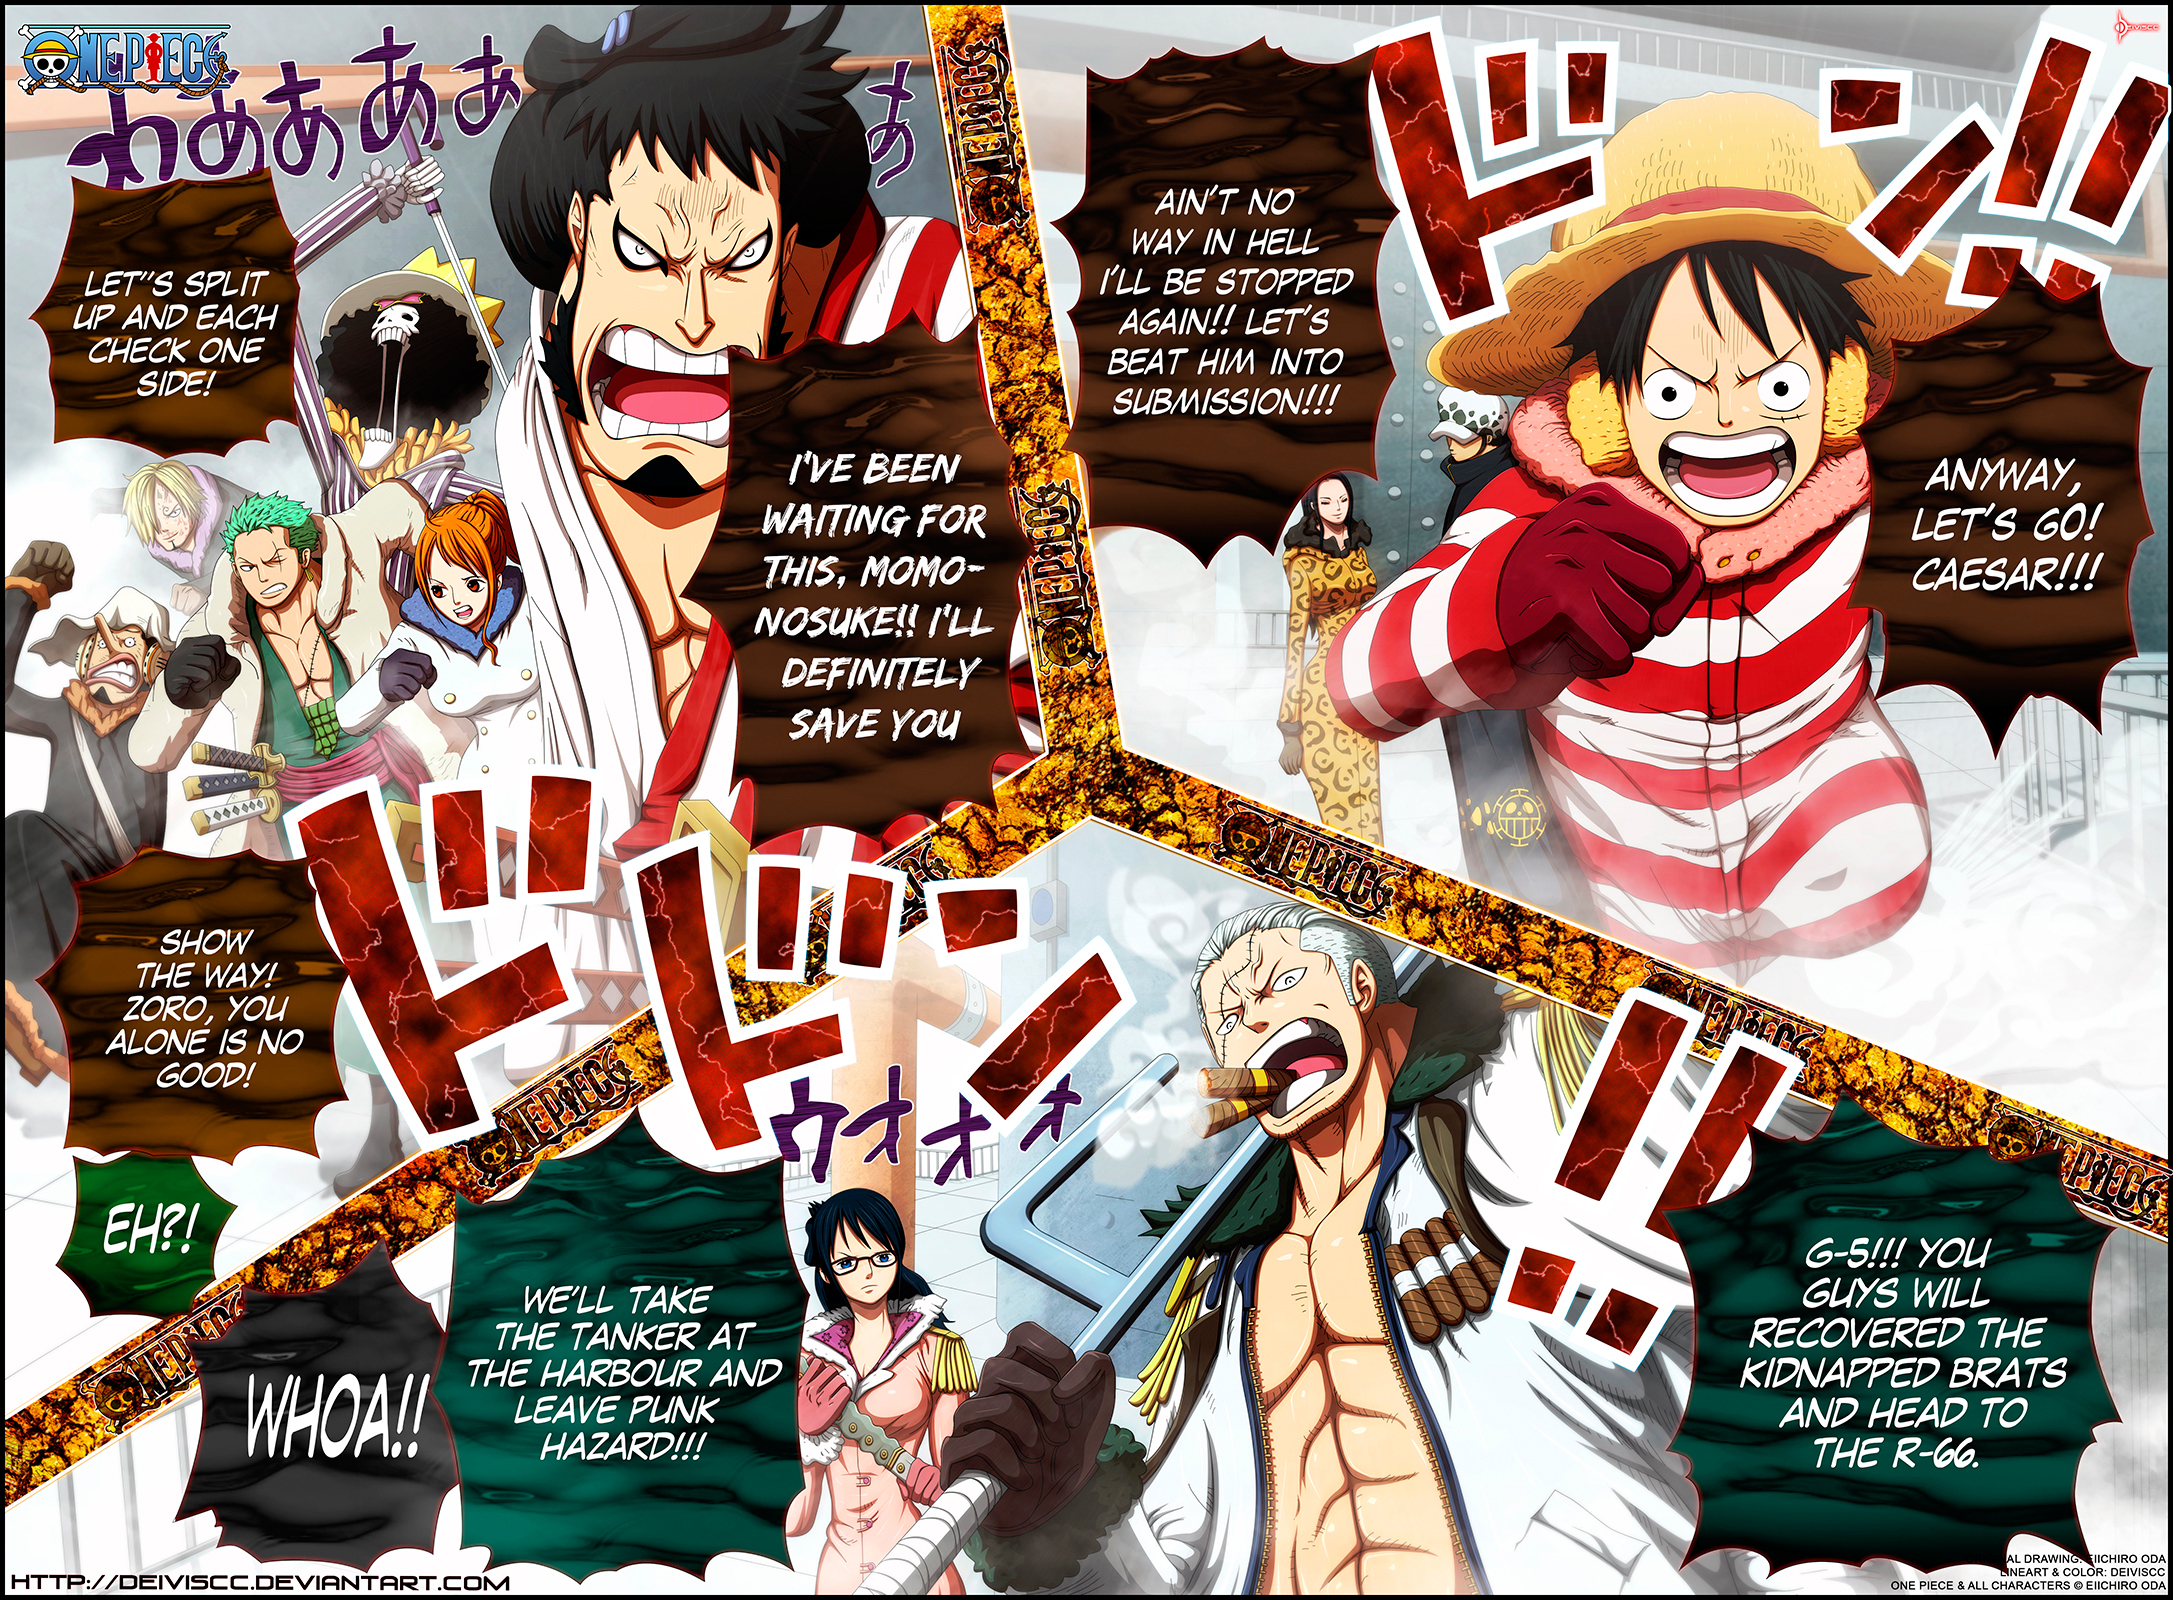 3.One Piece